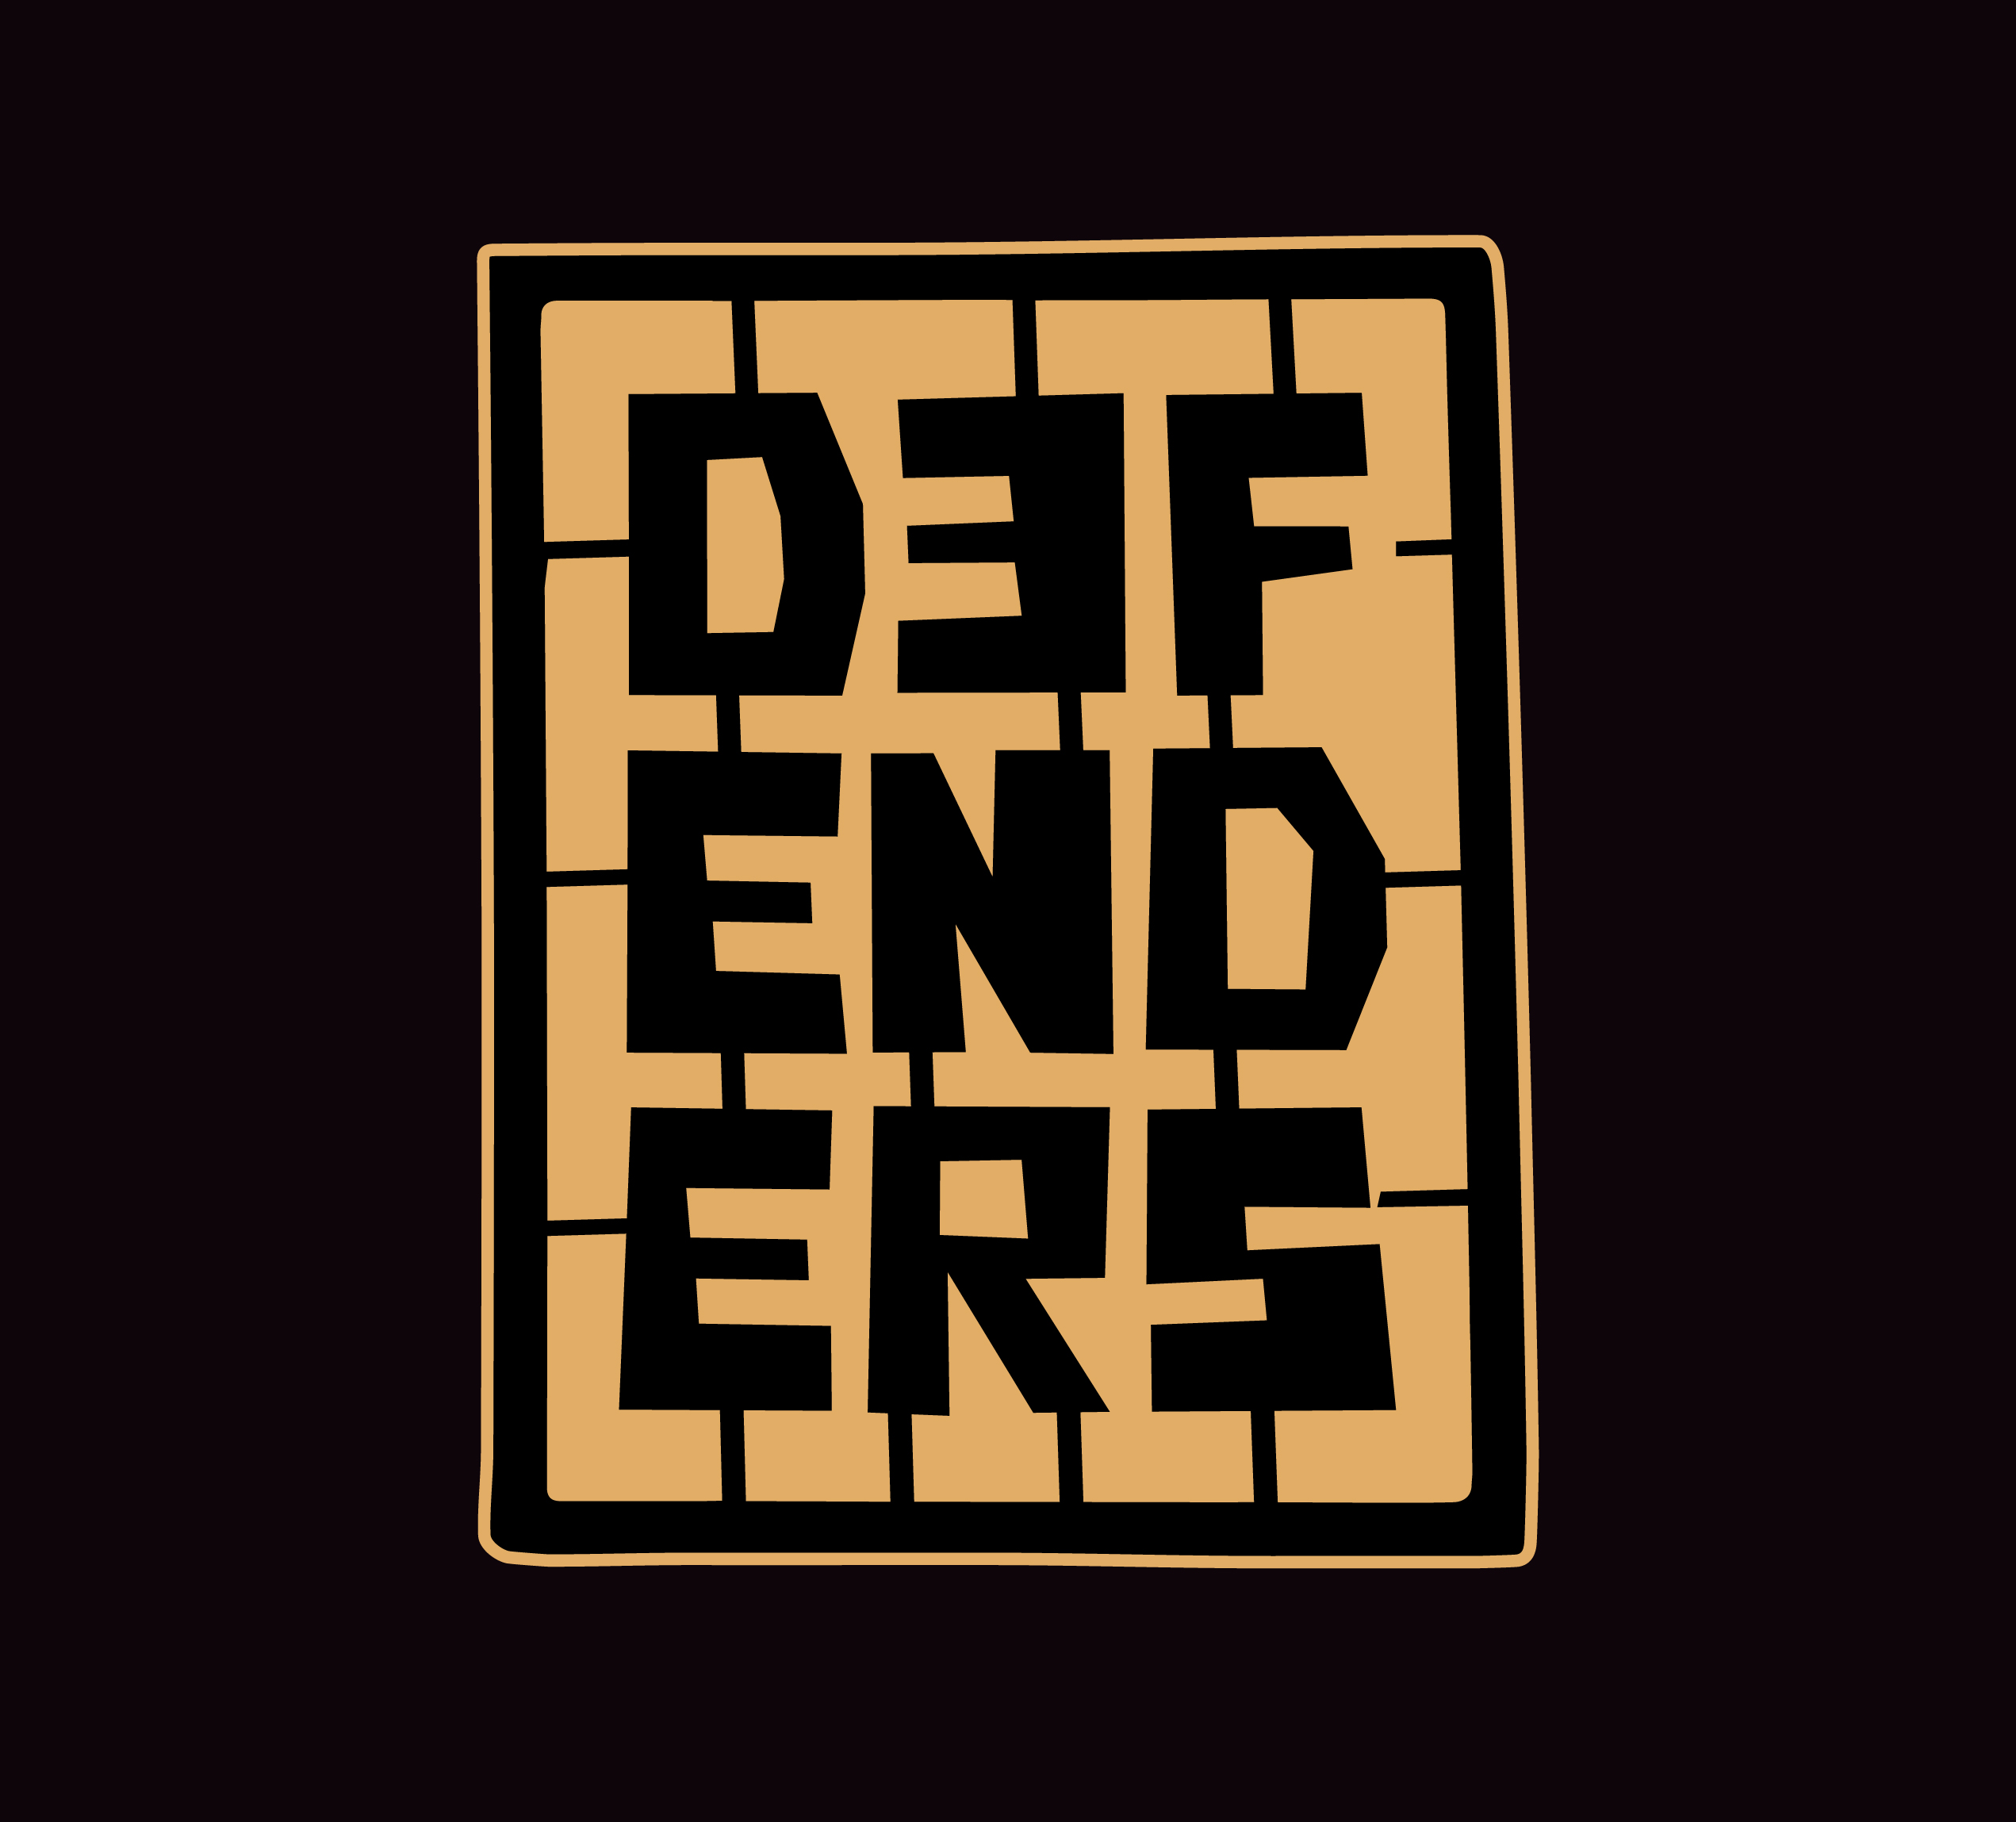 D3fenders